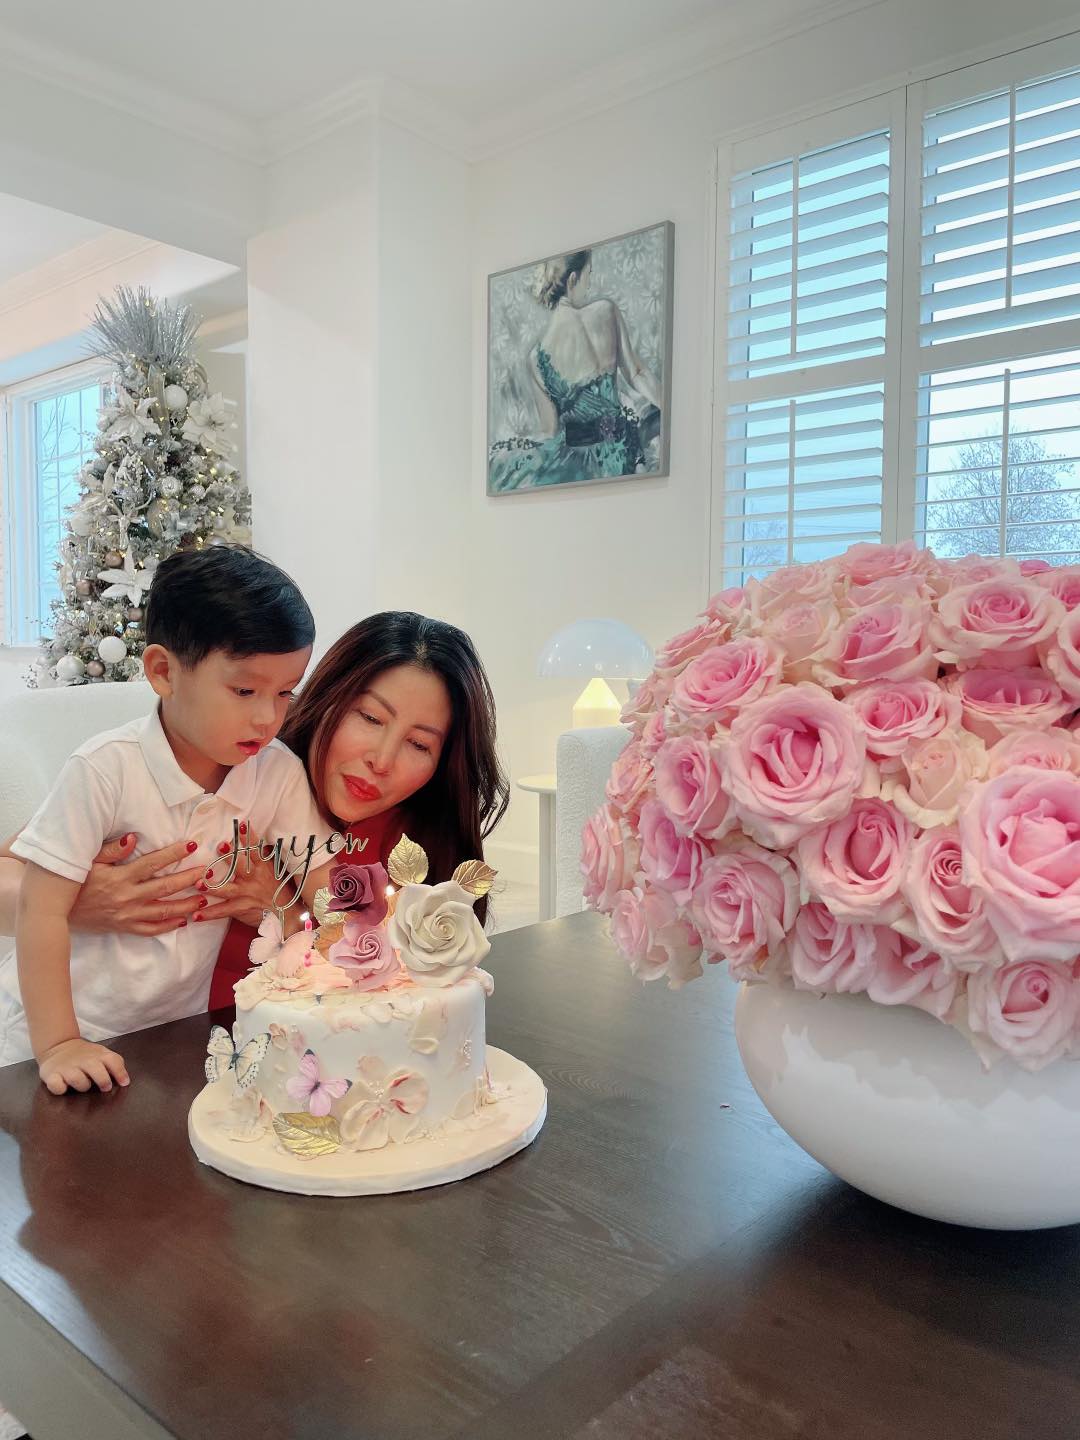 Phạm Hương tổ chức sinh nhật cho mẹ ruột tại Mỹ. Mẹ cô được khen trẻ trung, sang trọng trong căn biệt thự triệu đô của con gái.